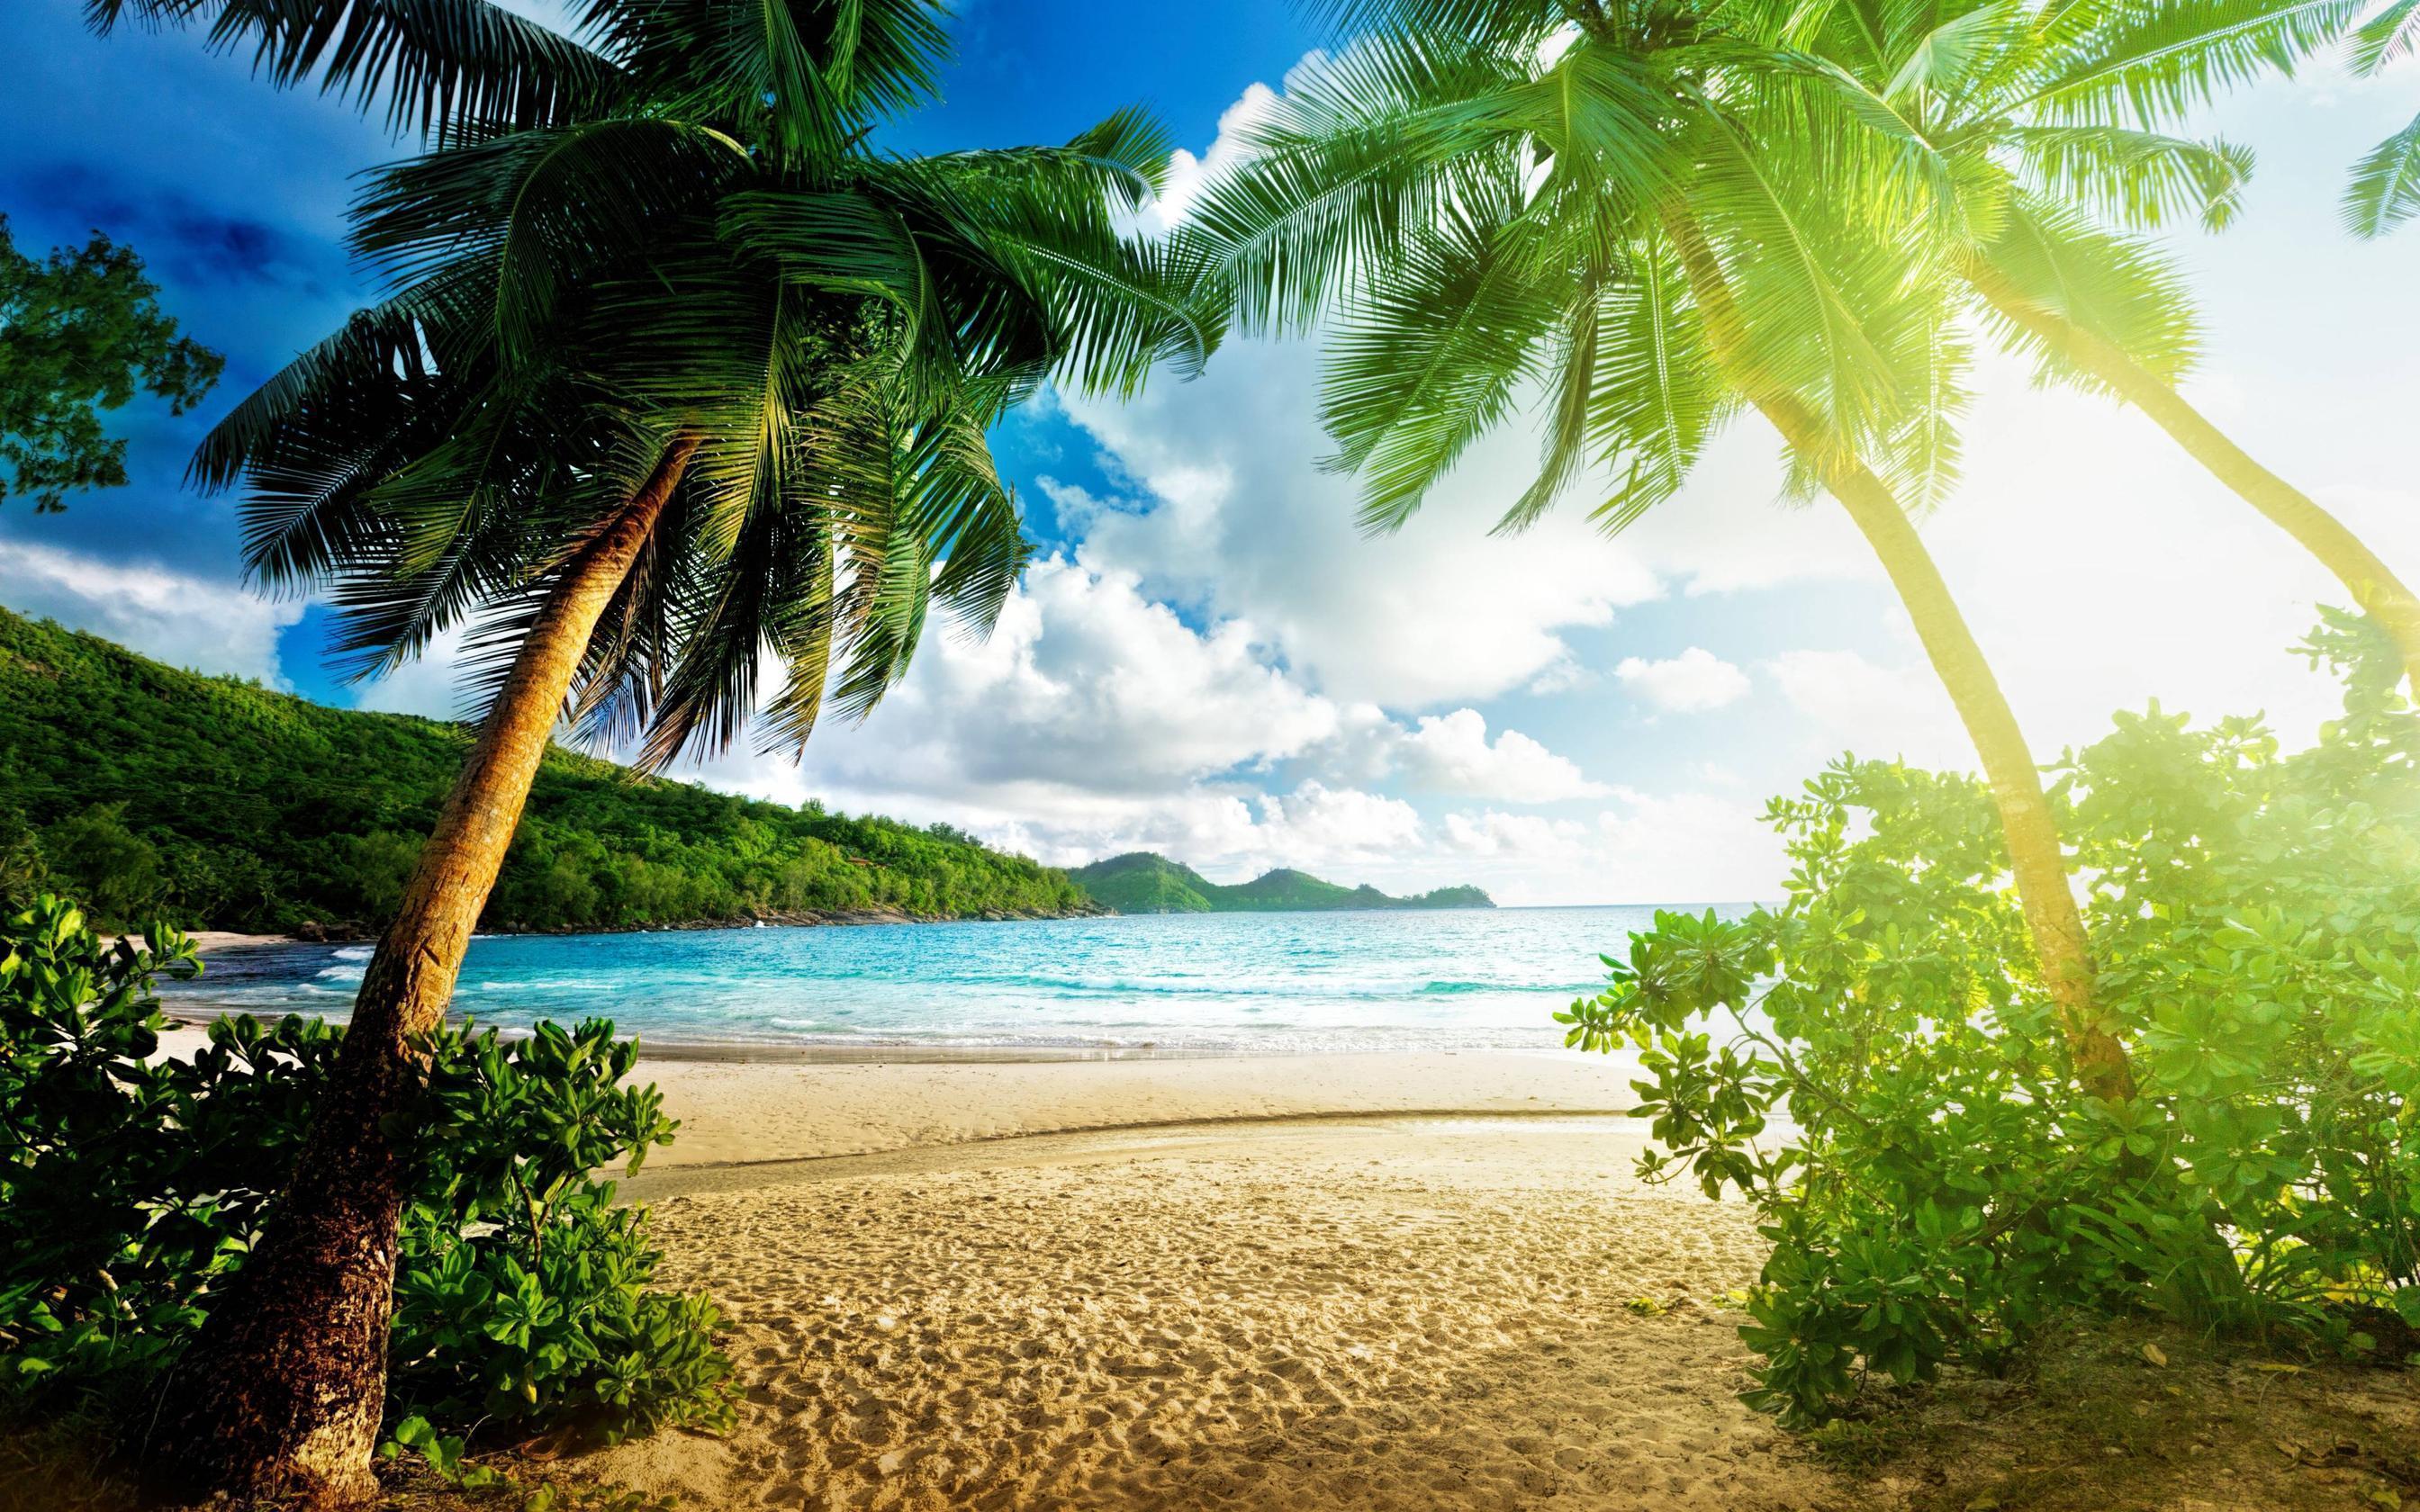 Exotic Beach, Palms, Sand, Ocean widescreen wallpaper. Wide